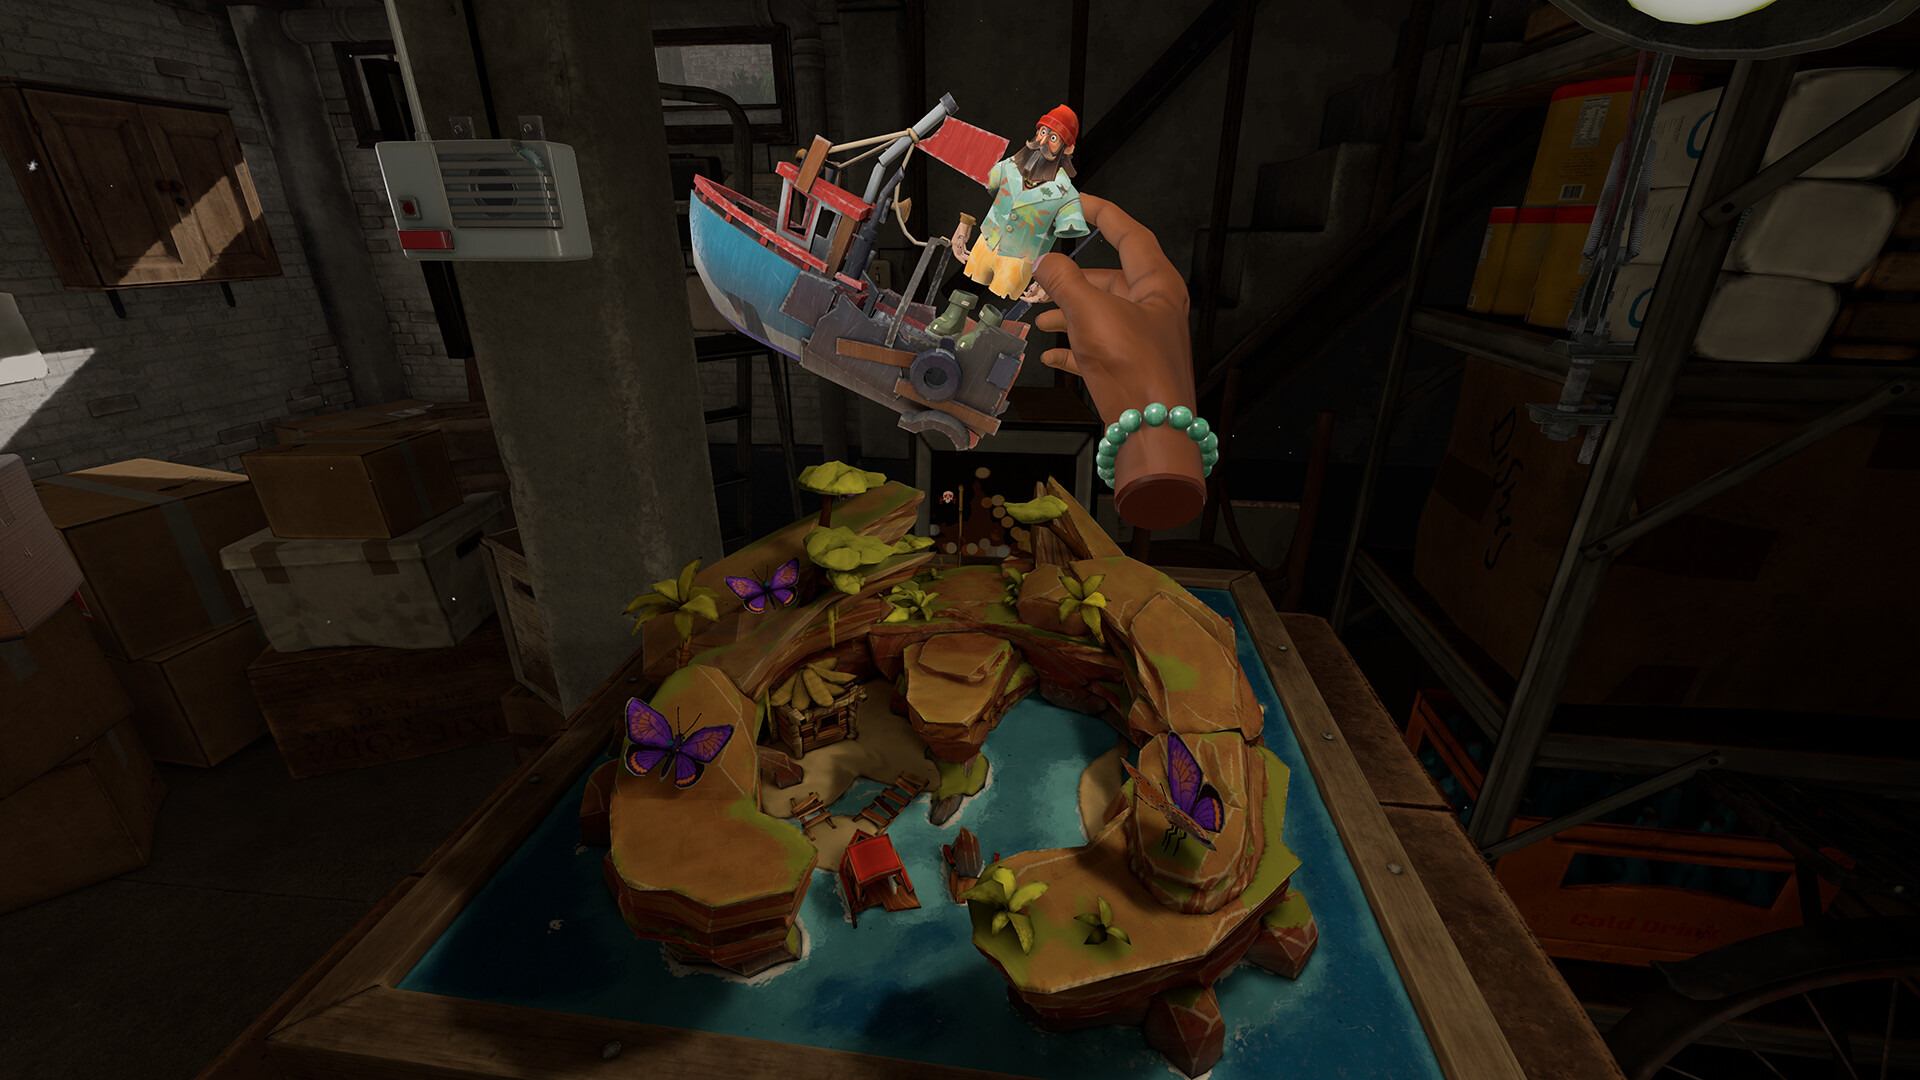 VR 游戏续作《另一个渔人传说》曝光首部宣传影片 运用四肢特性解谜插图2